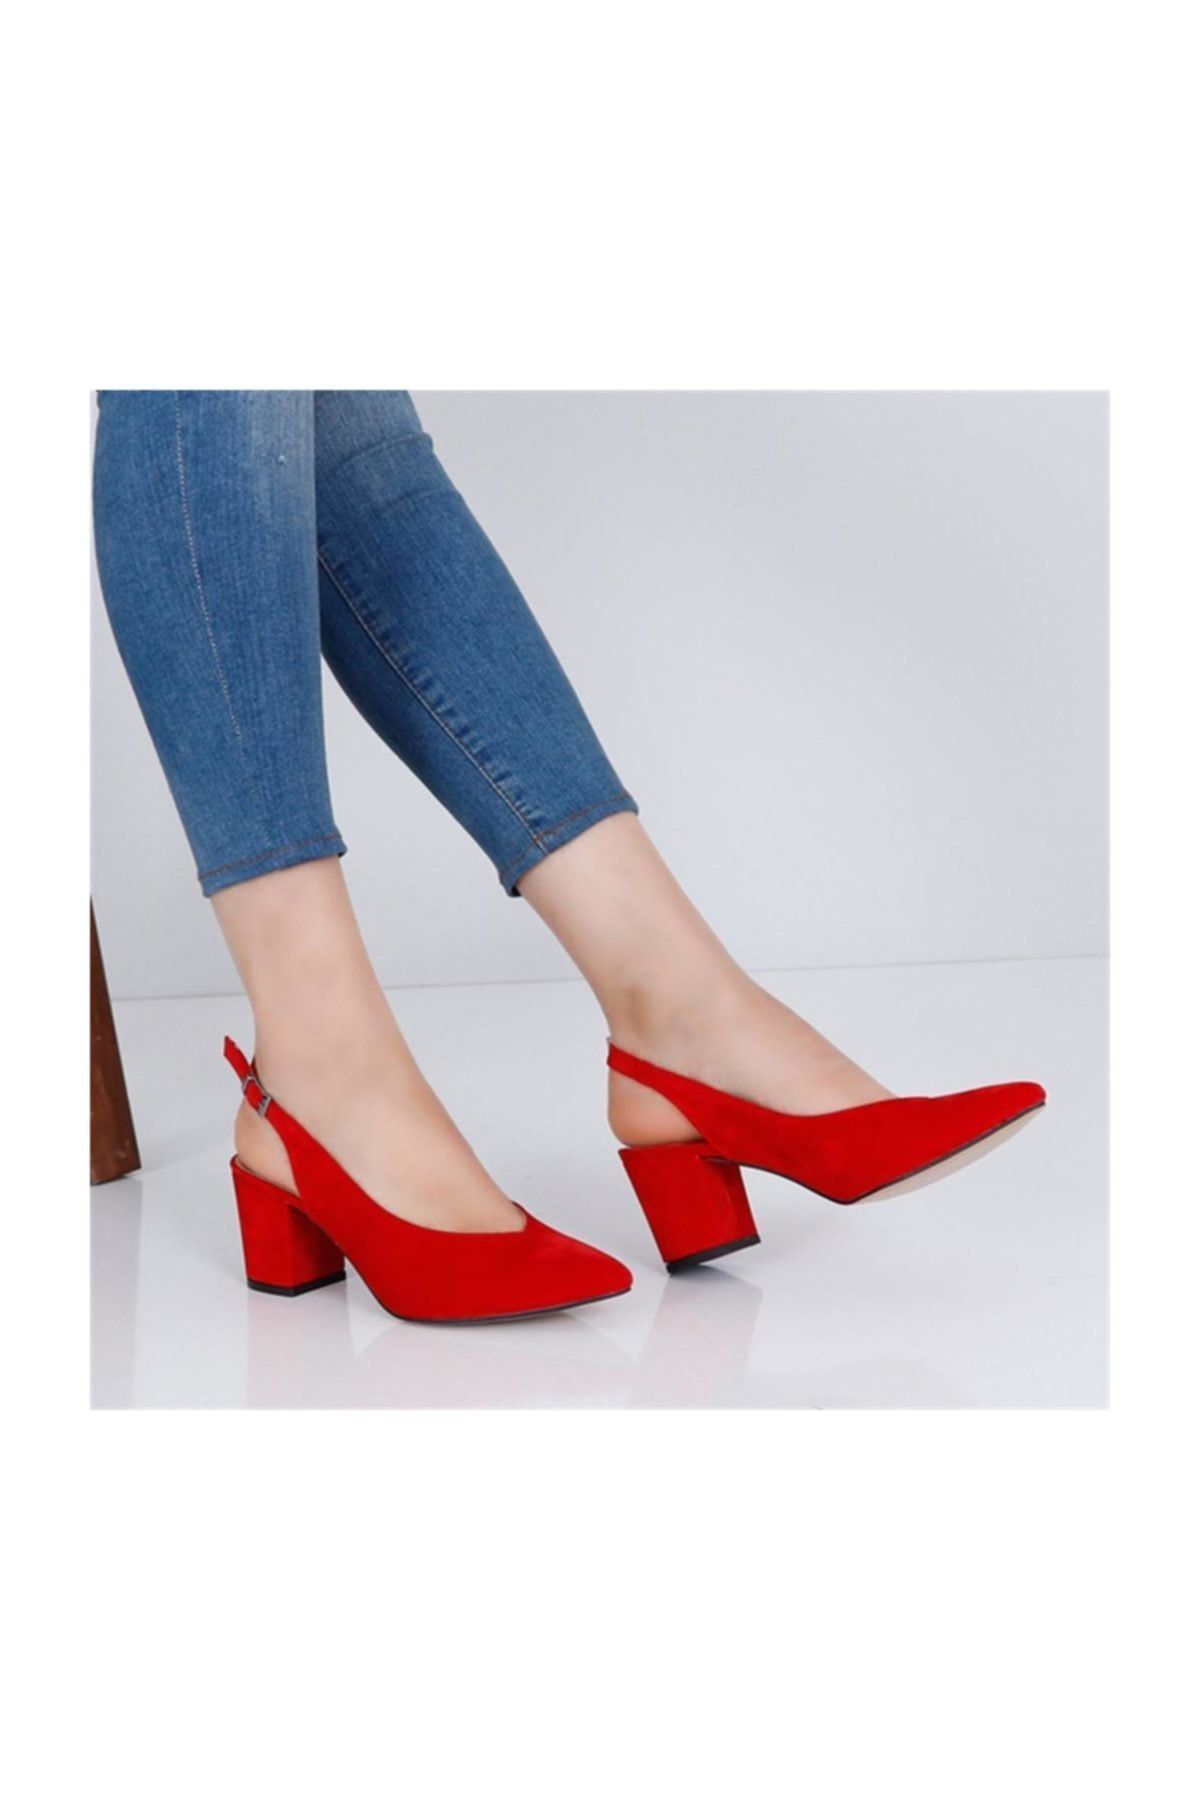 AYAKKABIBU Kırmızı Süet Kalın Topuklu Kadın Ayakkabı Cv111y